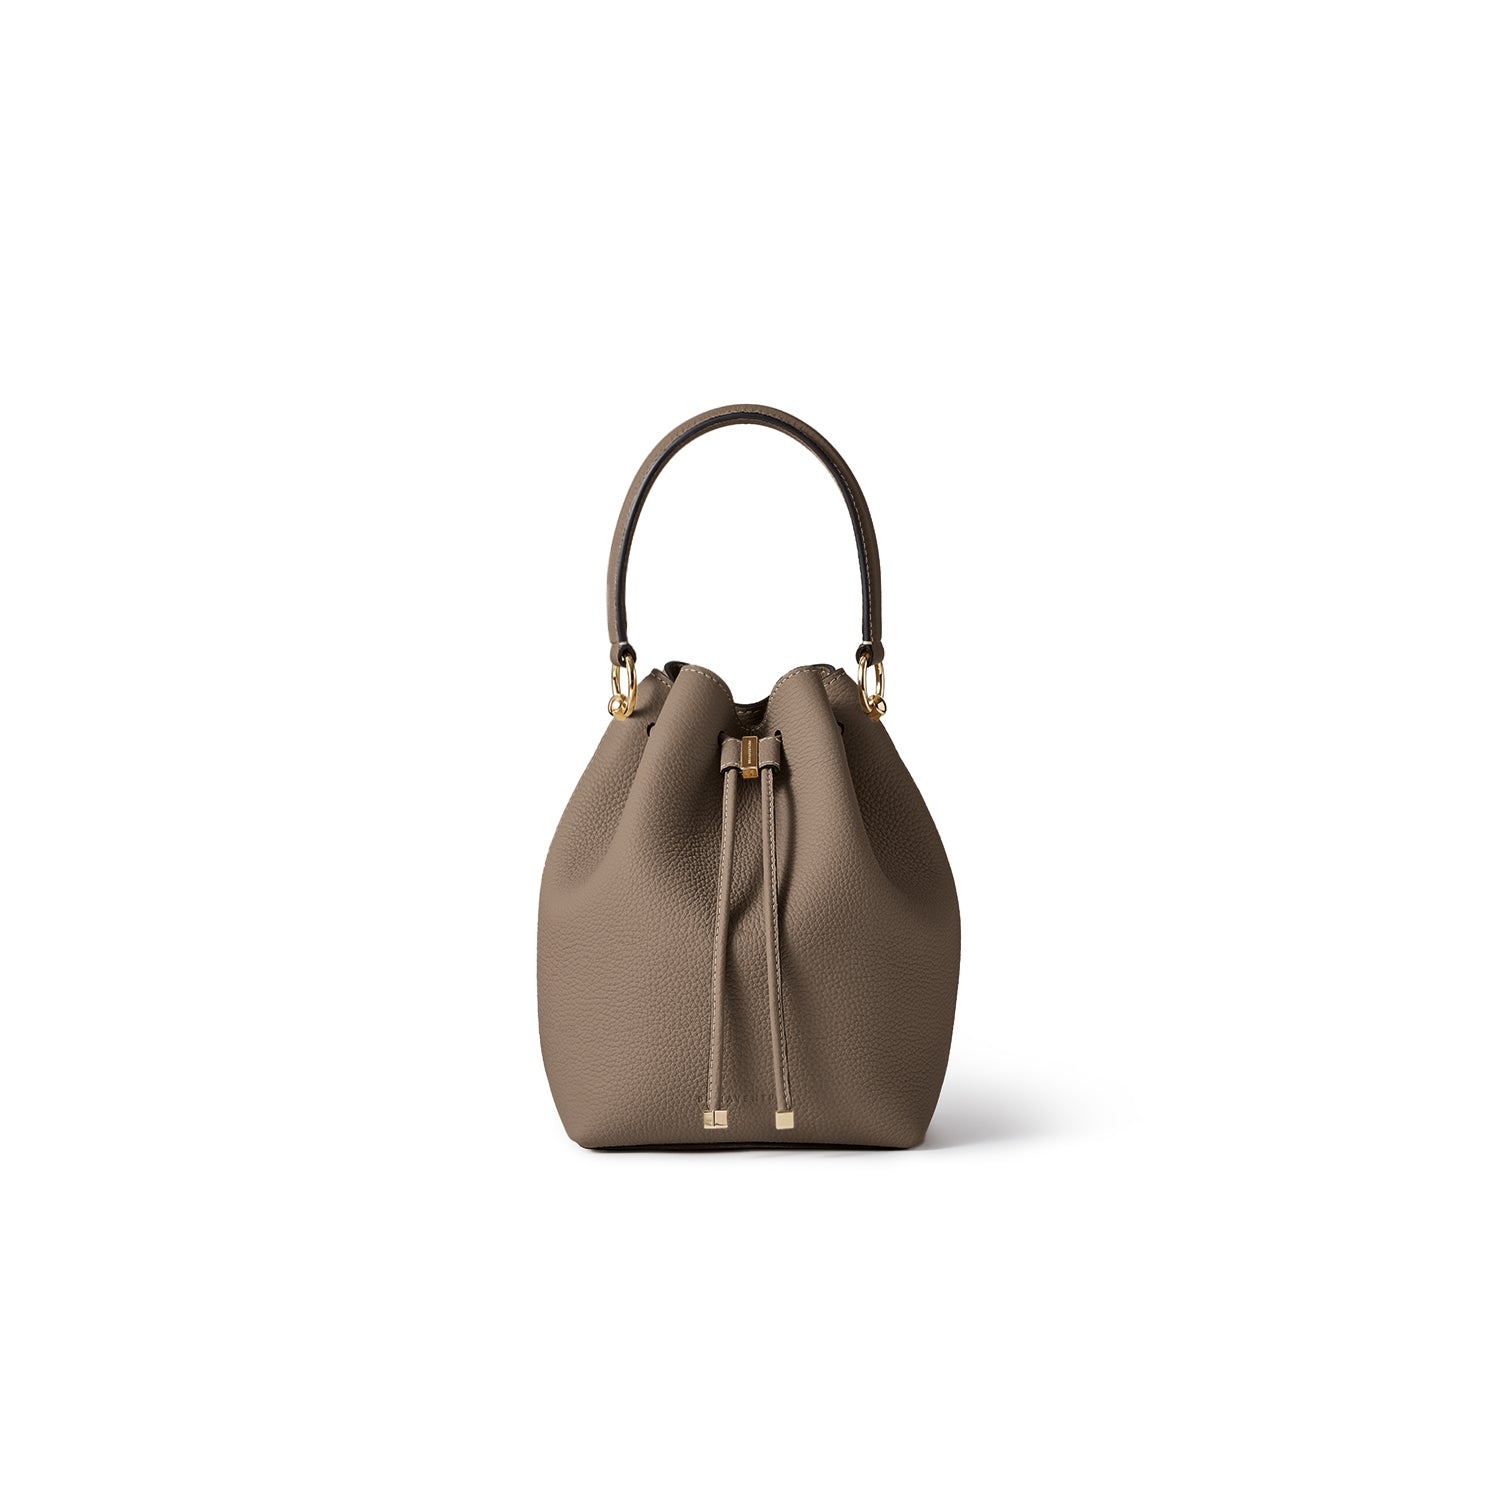 上質なレザーのレディースバッグ – イタリア(ミラノ)発の高級革製品の